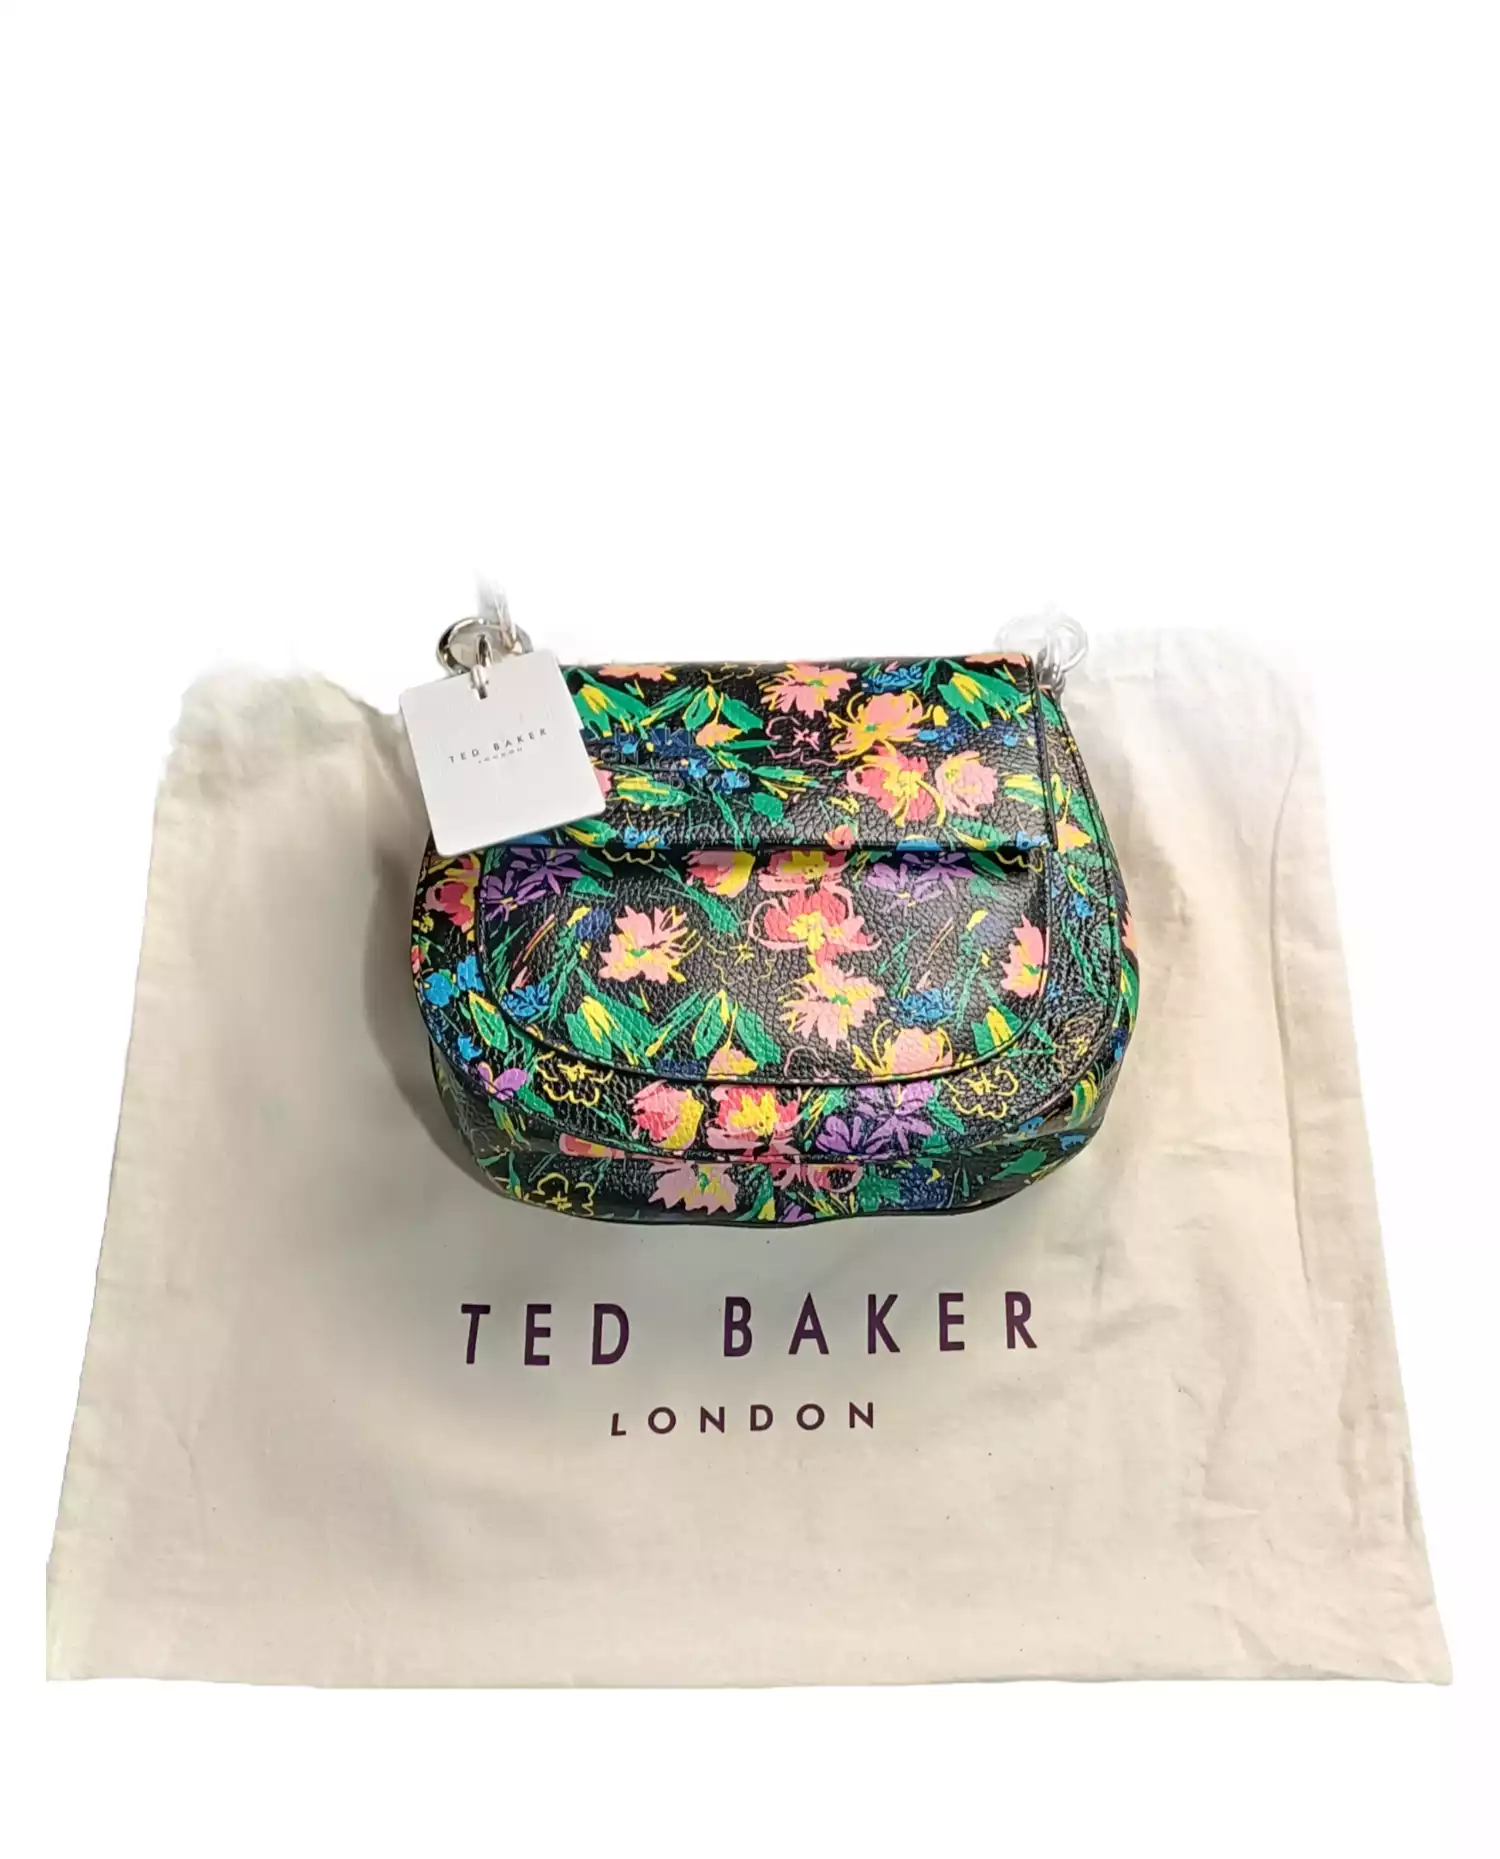 Handbag by Ted Baker